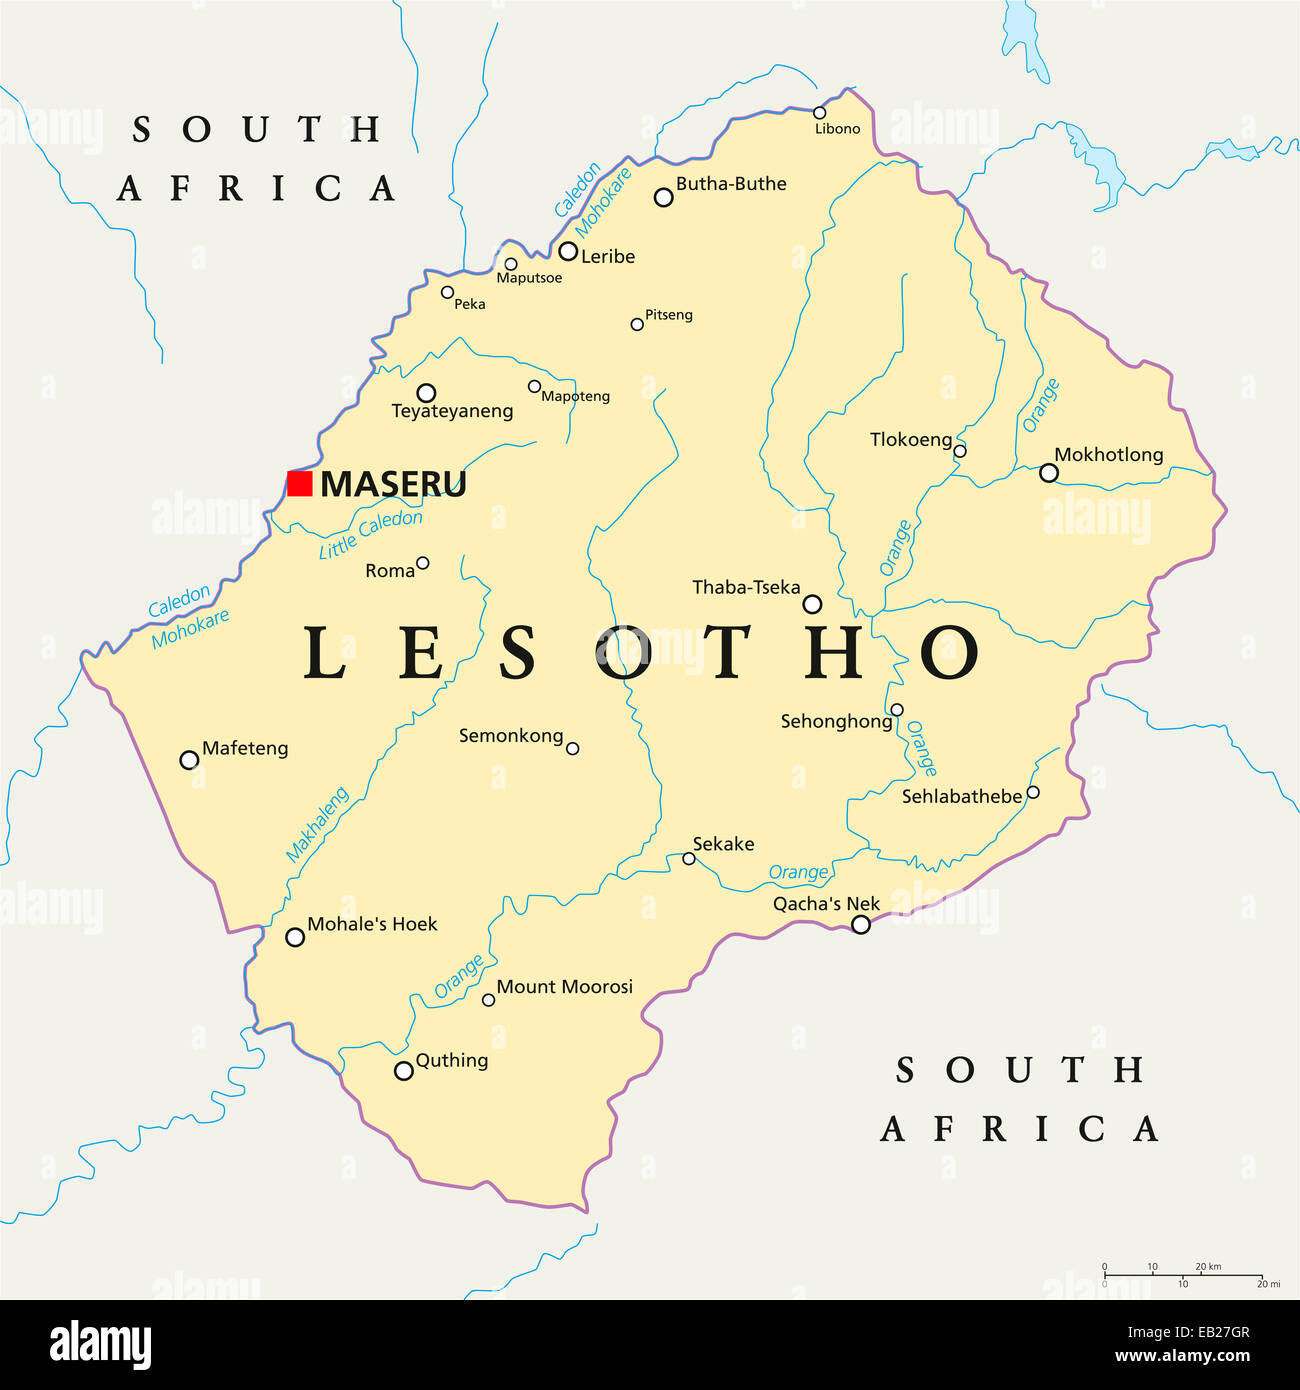 Mapa Politico Con Lesotho Maseru Capital De Las Fronteras Nacionales Importantes Ciudades Y Rios Rotulos En Ingles Y Escalado Eb27gr 